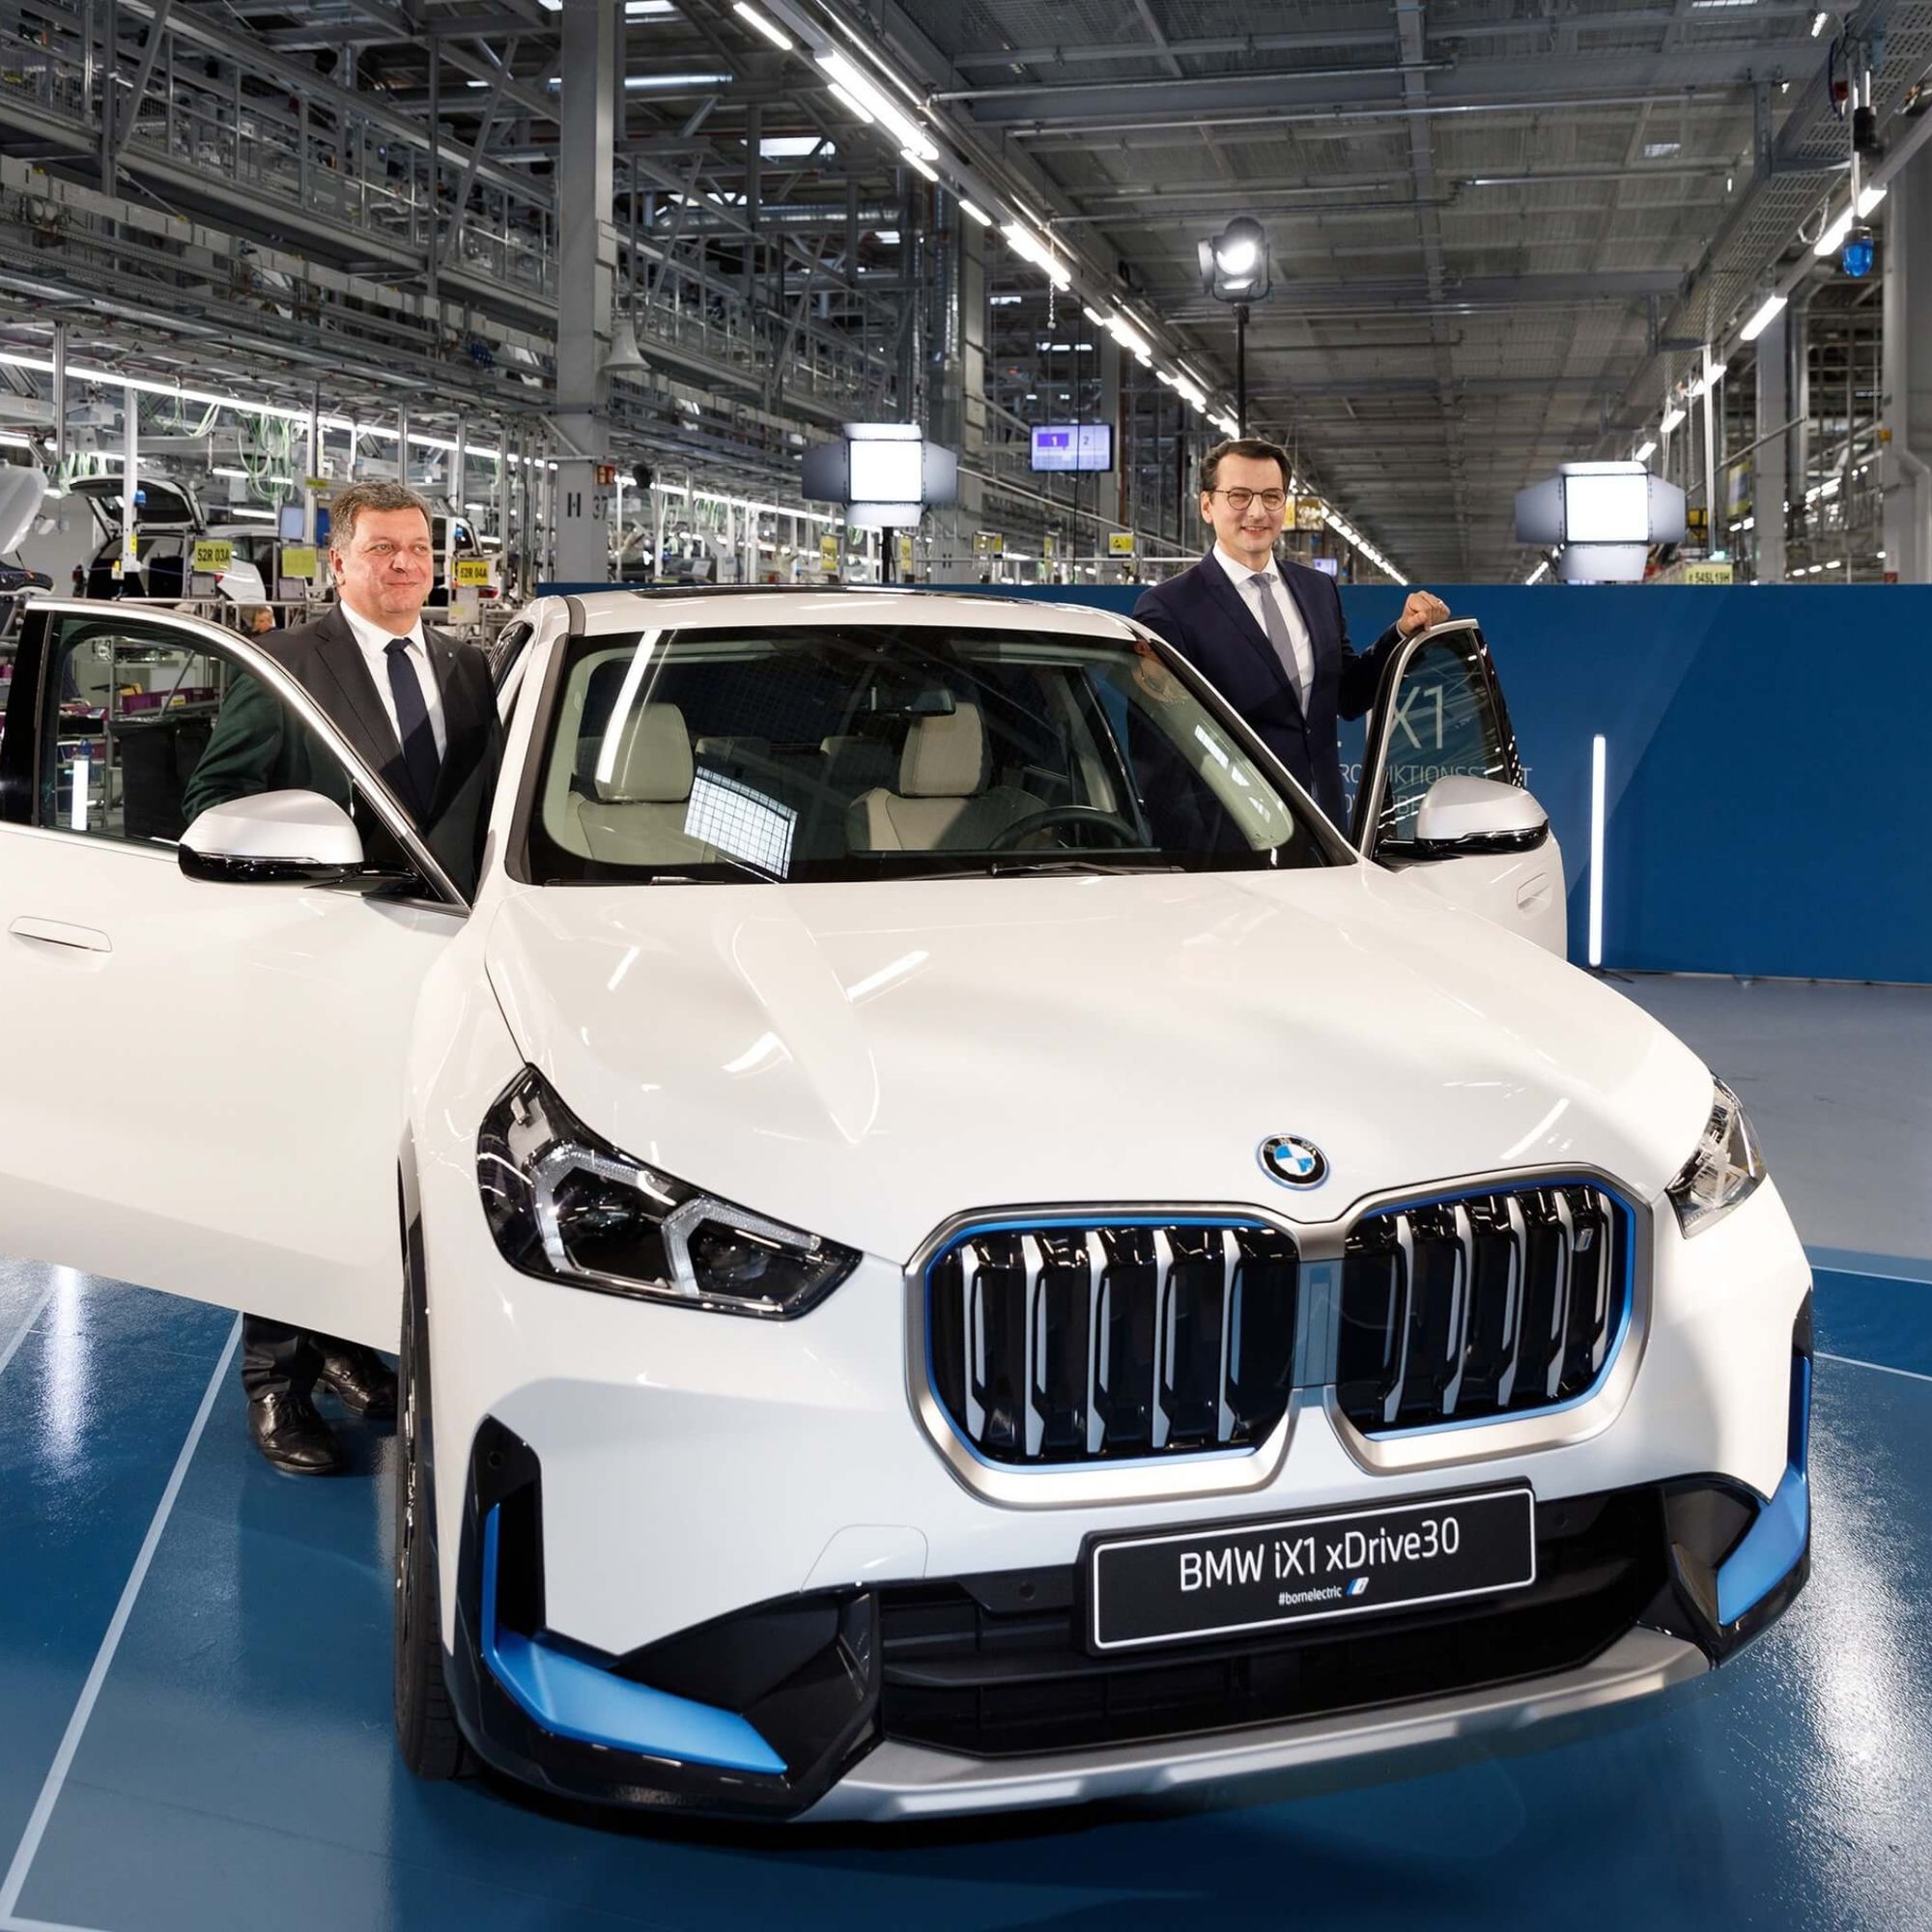 Mẫu xe chạy điện BMW iX1 bắt đầu được sản xuất tại nhà máy BMW ở Đức